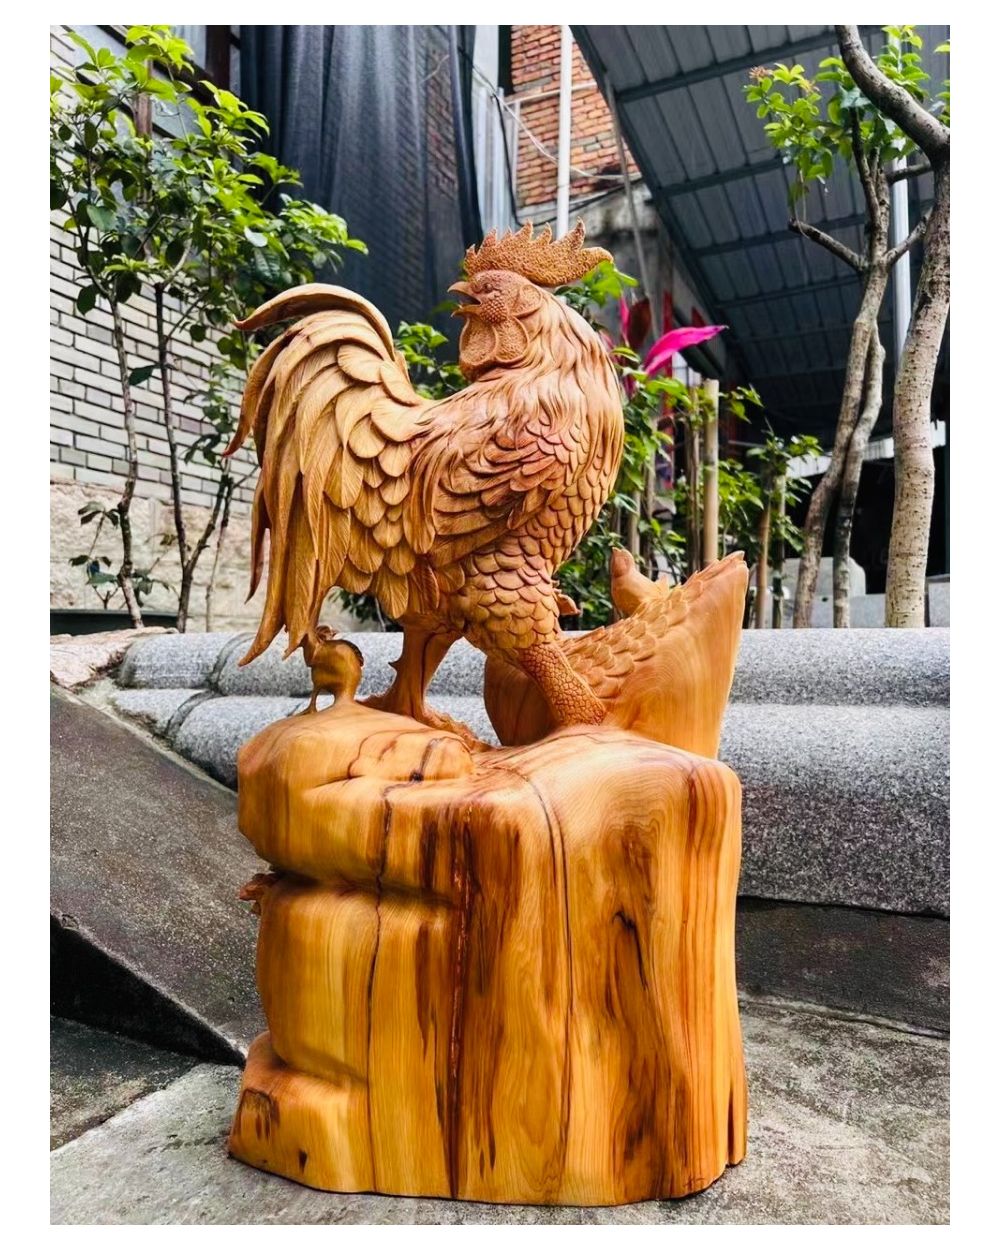 Nếu bạn là một người yêu thích nghệ thuật thủ công, thì tượng gà gỗ trong hình sẽ là nét độc đáo cho không gian của bạn. Họ là sản phẩm được làm thủ công bởi những người nghệ nhân tài ba, với những chi tiết tinh xảo và chất liệu gỗ tốt. Gà gỗ sẽ mang lại vẻ đẹp và sự tinh tế cho không gian sống của bạn.